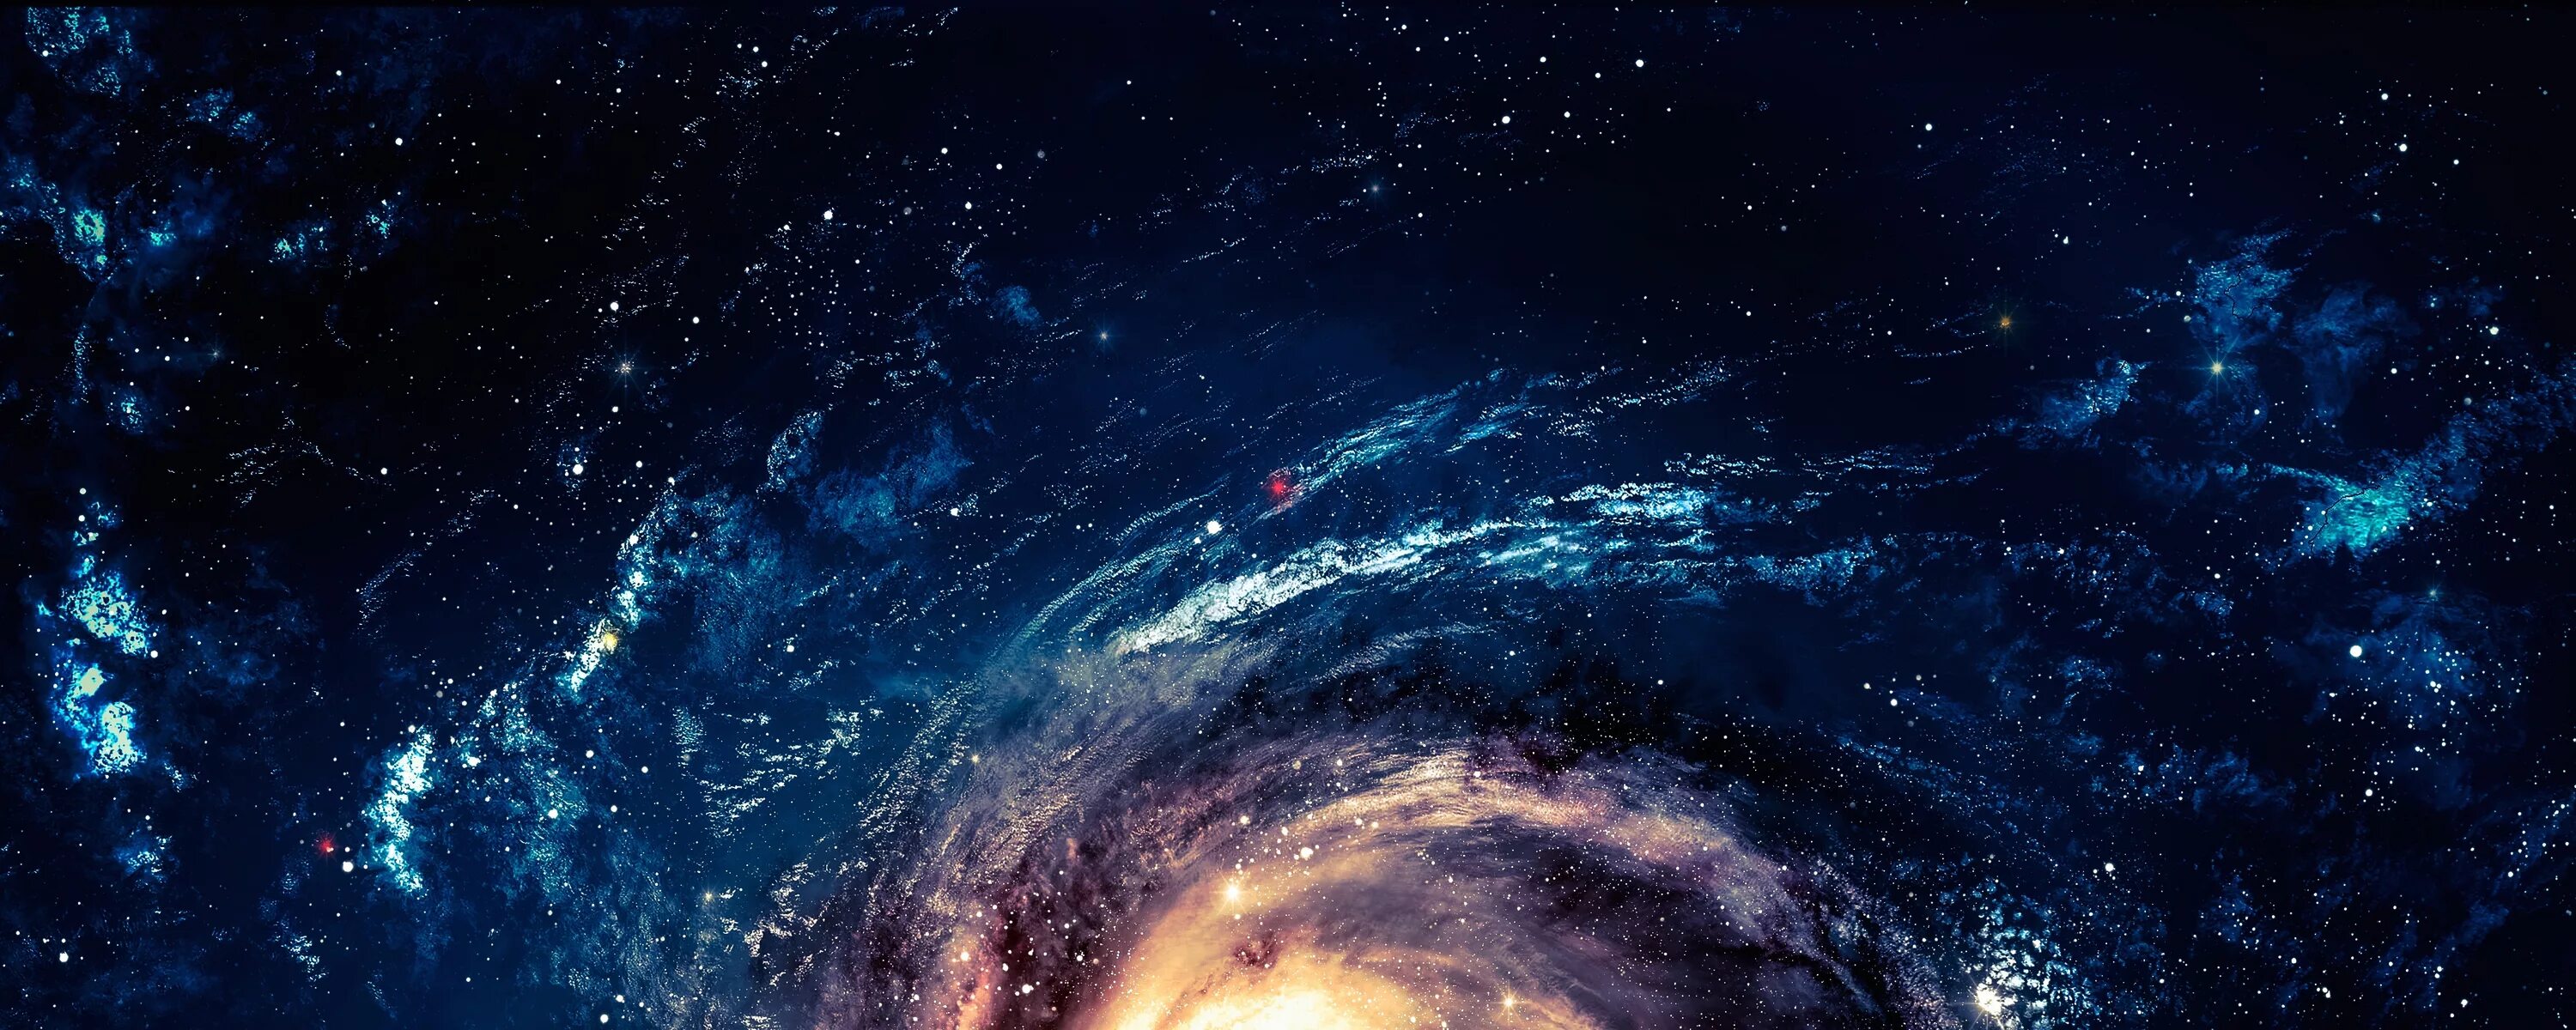 Космос. Космос панорама. Обои космос. Фон для рабочего стола космос. Изображение 2000 2000 пикселей